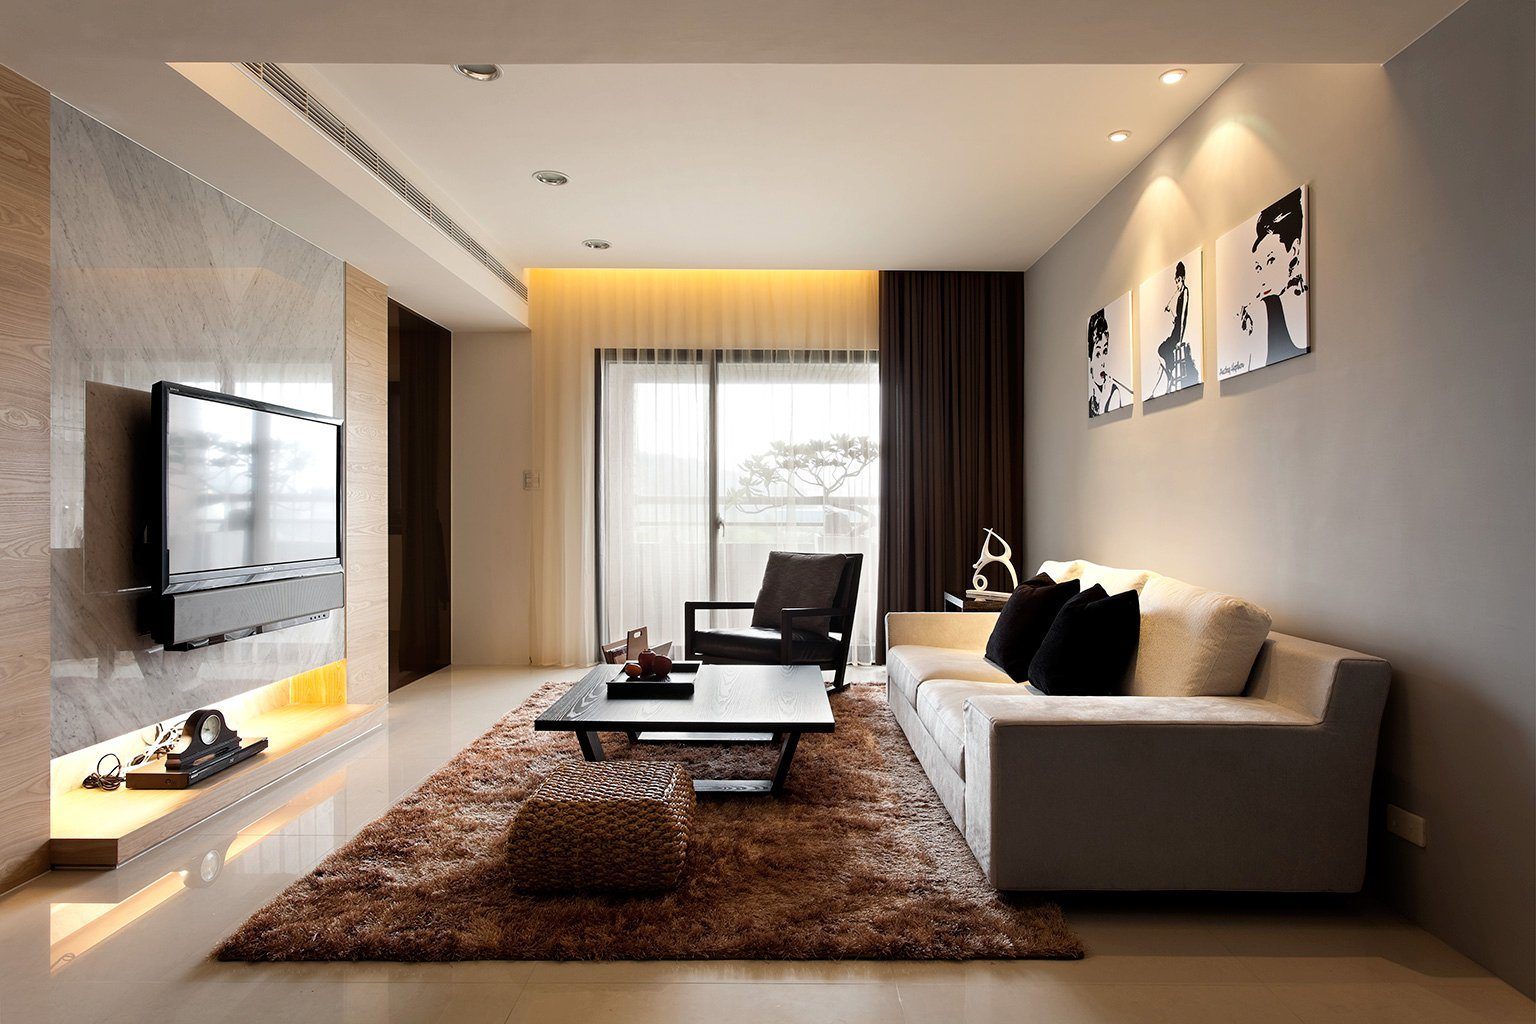 Composição de uma sala minimalista